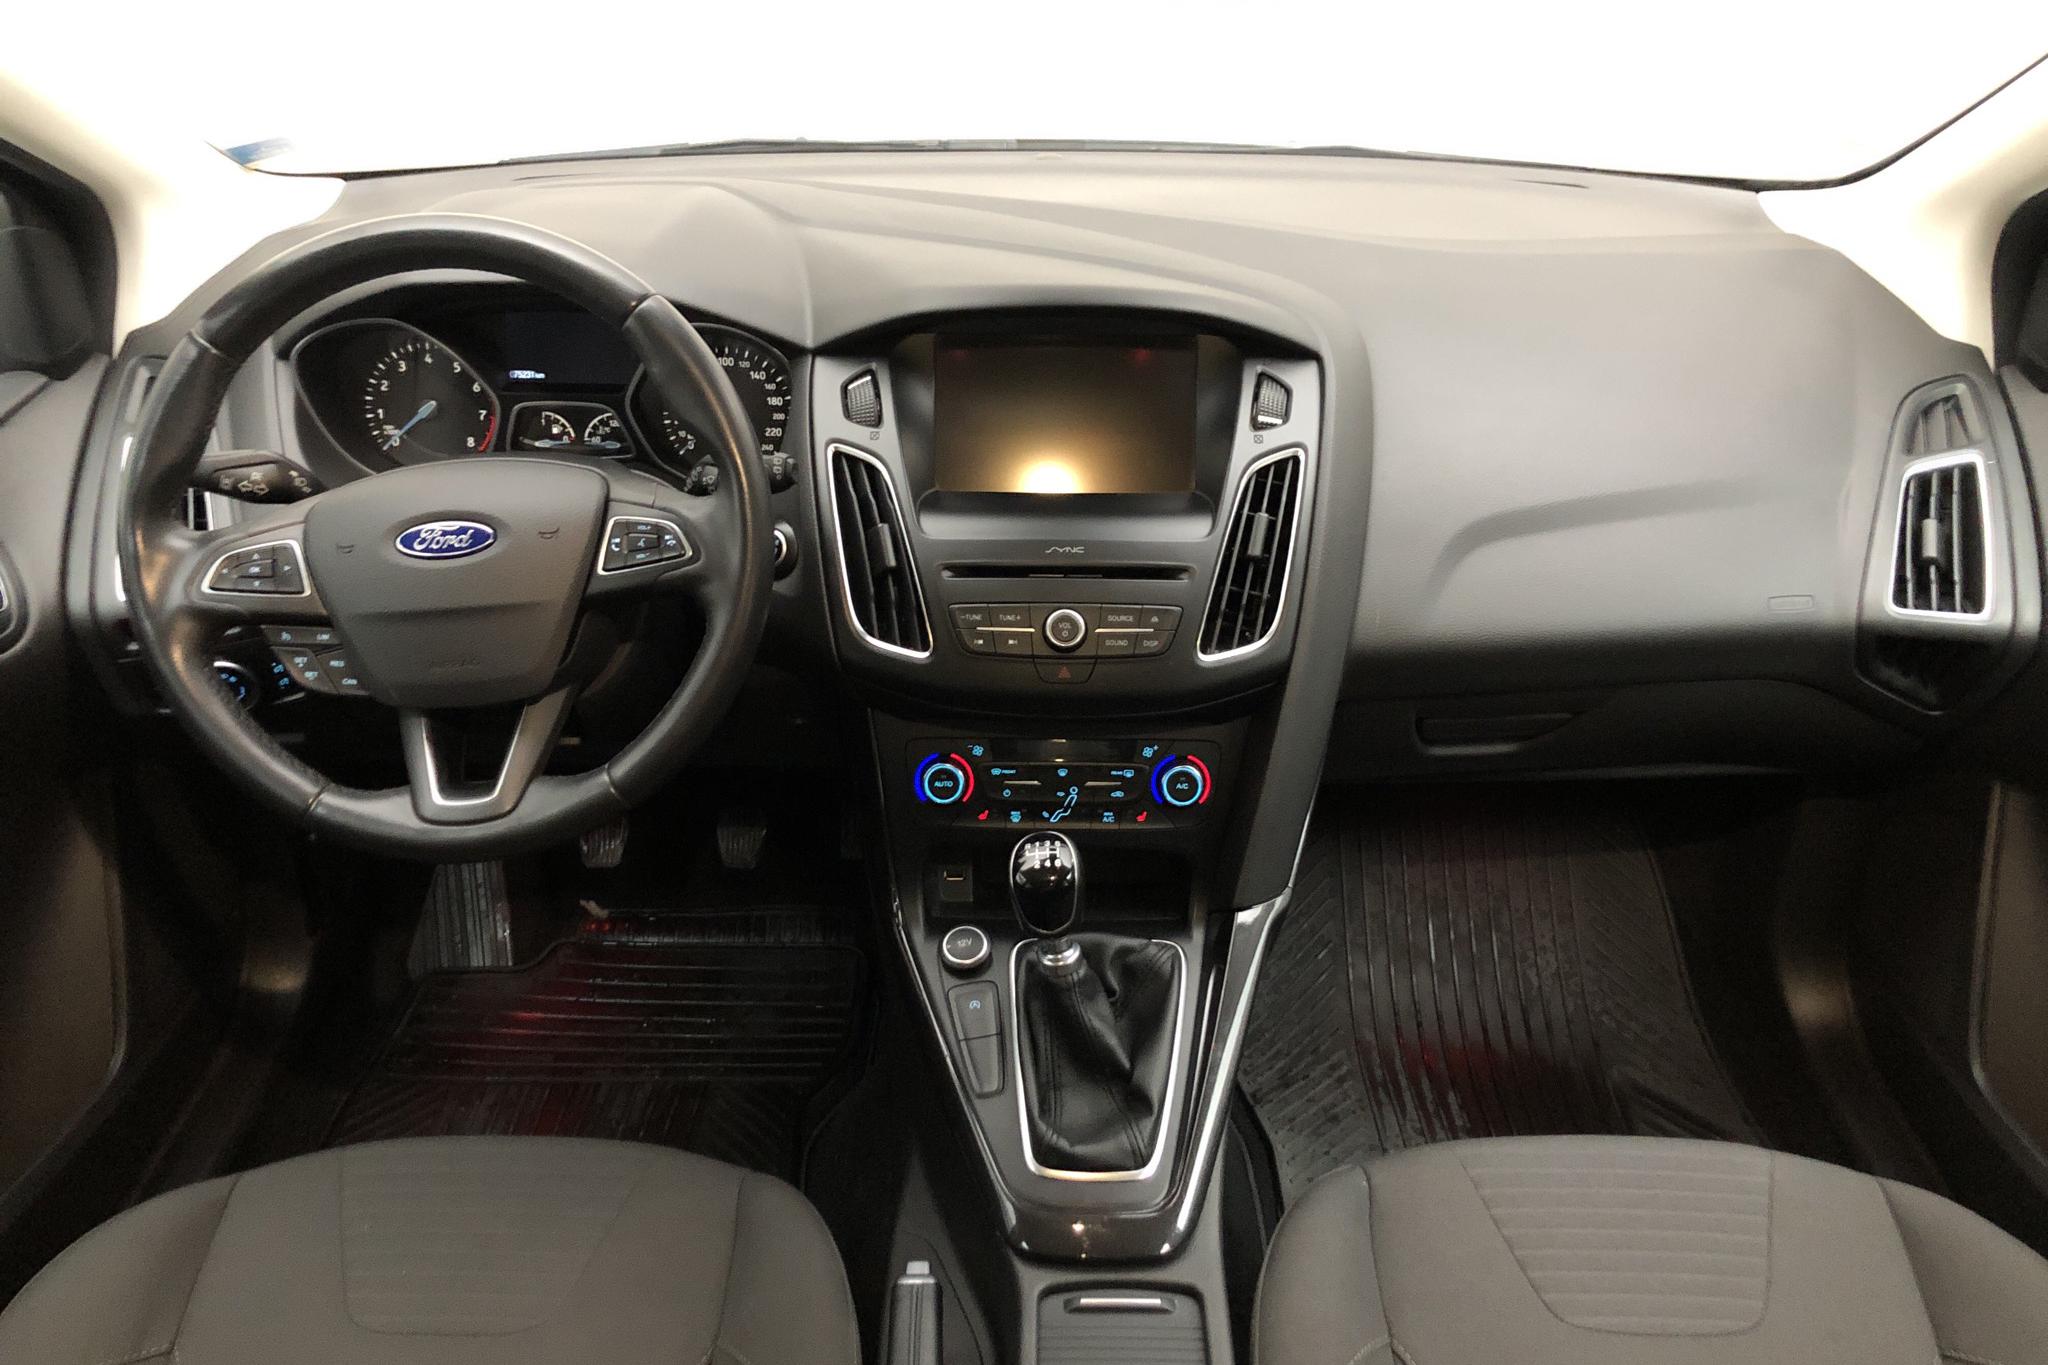 Ford Focus 1.0 EcoBoost 5dr (125hk) - 7 524 mil - Manuell - grå - 2016